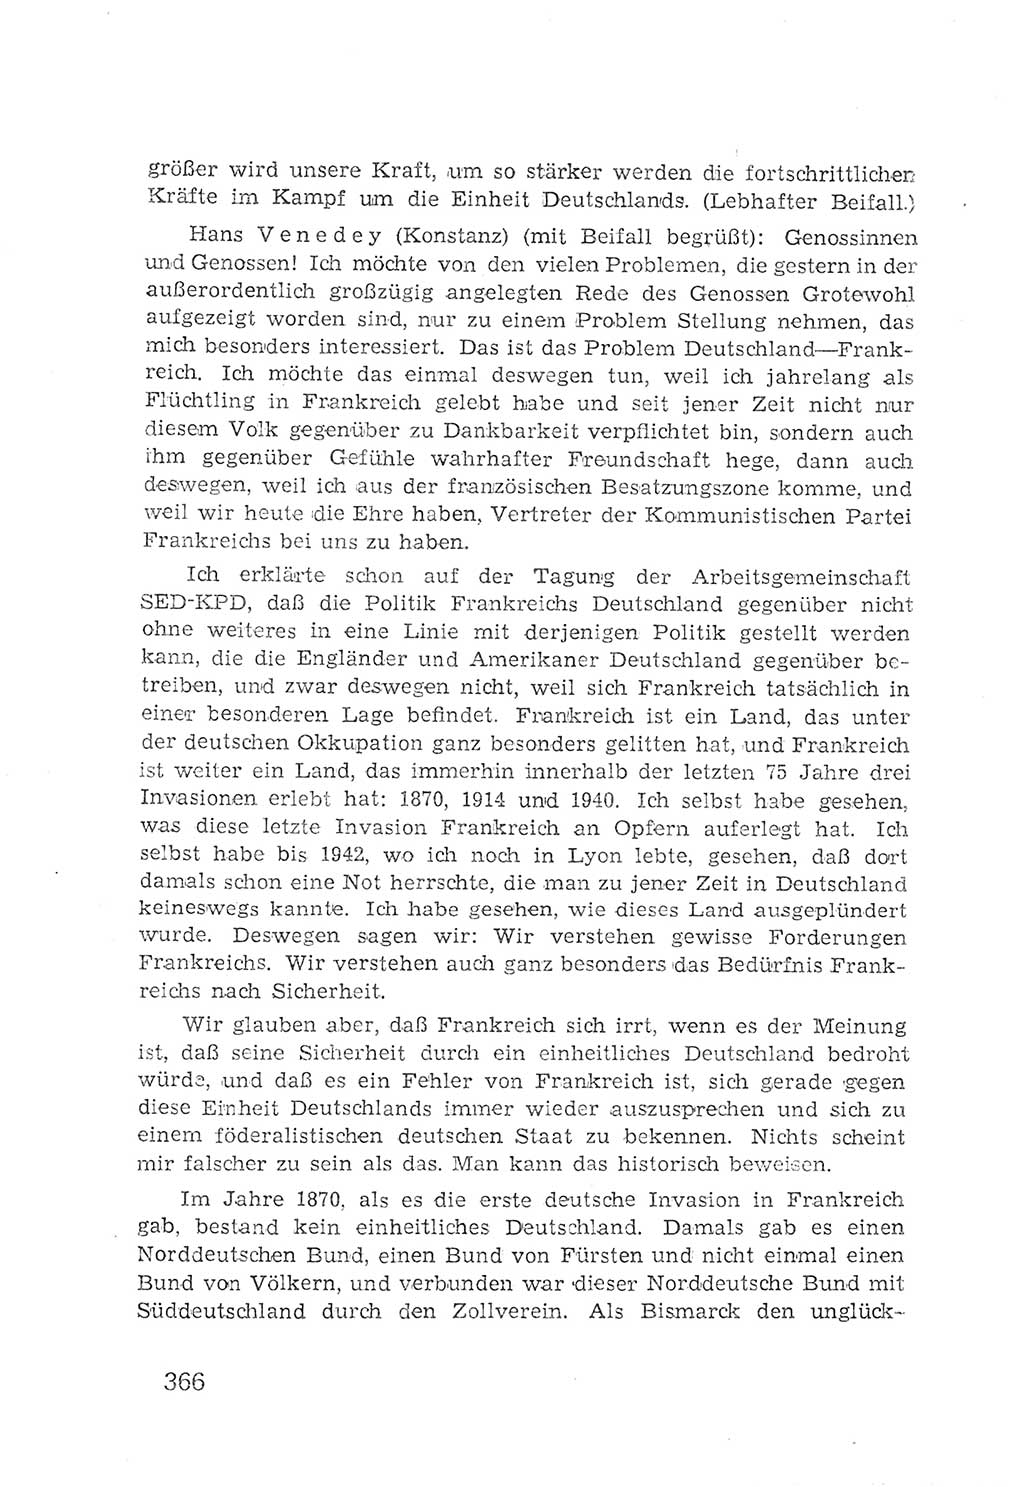 Protokoll der Verhandlungen des 2. Parteitages der Sozialistischen Einheitspartei Deutschlands (SED) [Sowjetische Besatzungszone (SBZ) Deutschlands] 1947, Seite 366 (Prot. Verh. 2. PT SED SBZ Dtl. 1947, S. 366)